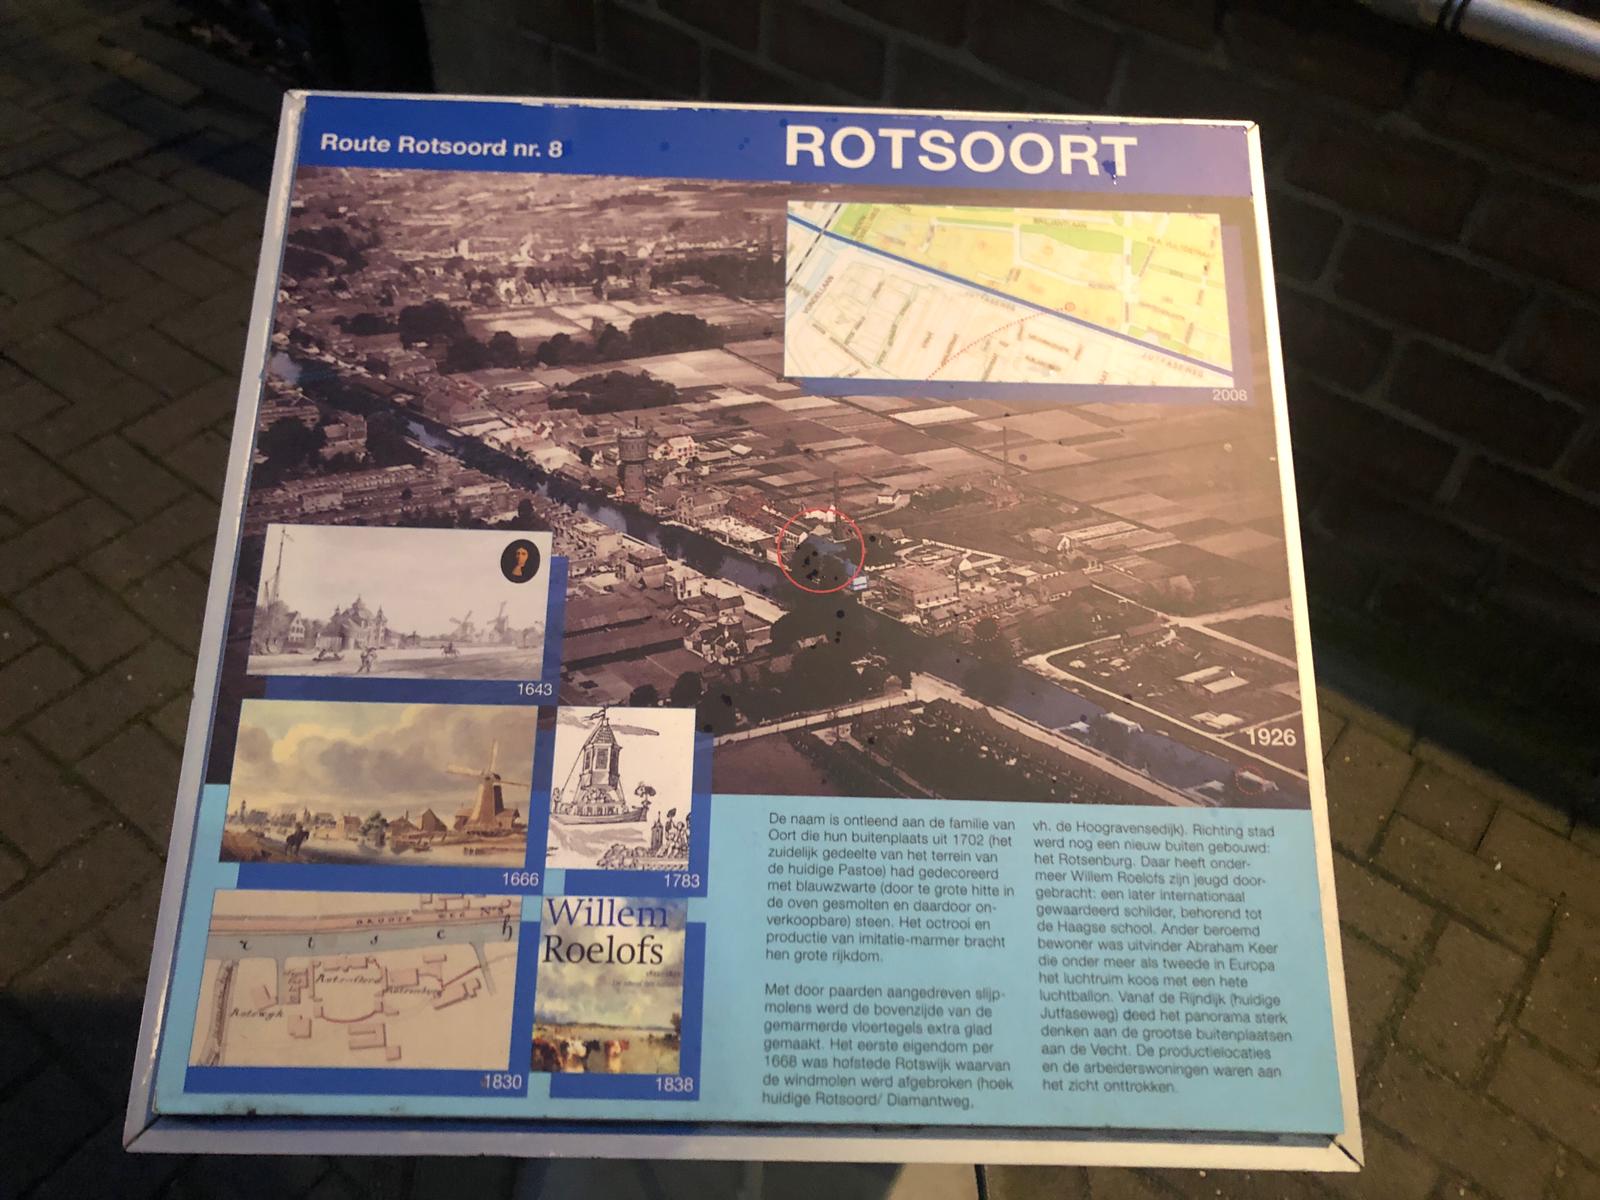 Route Rotsoord no. 8 – Rotsoort